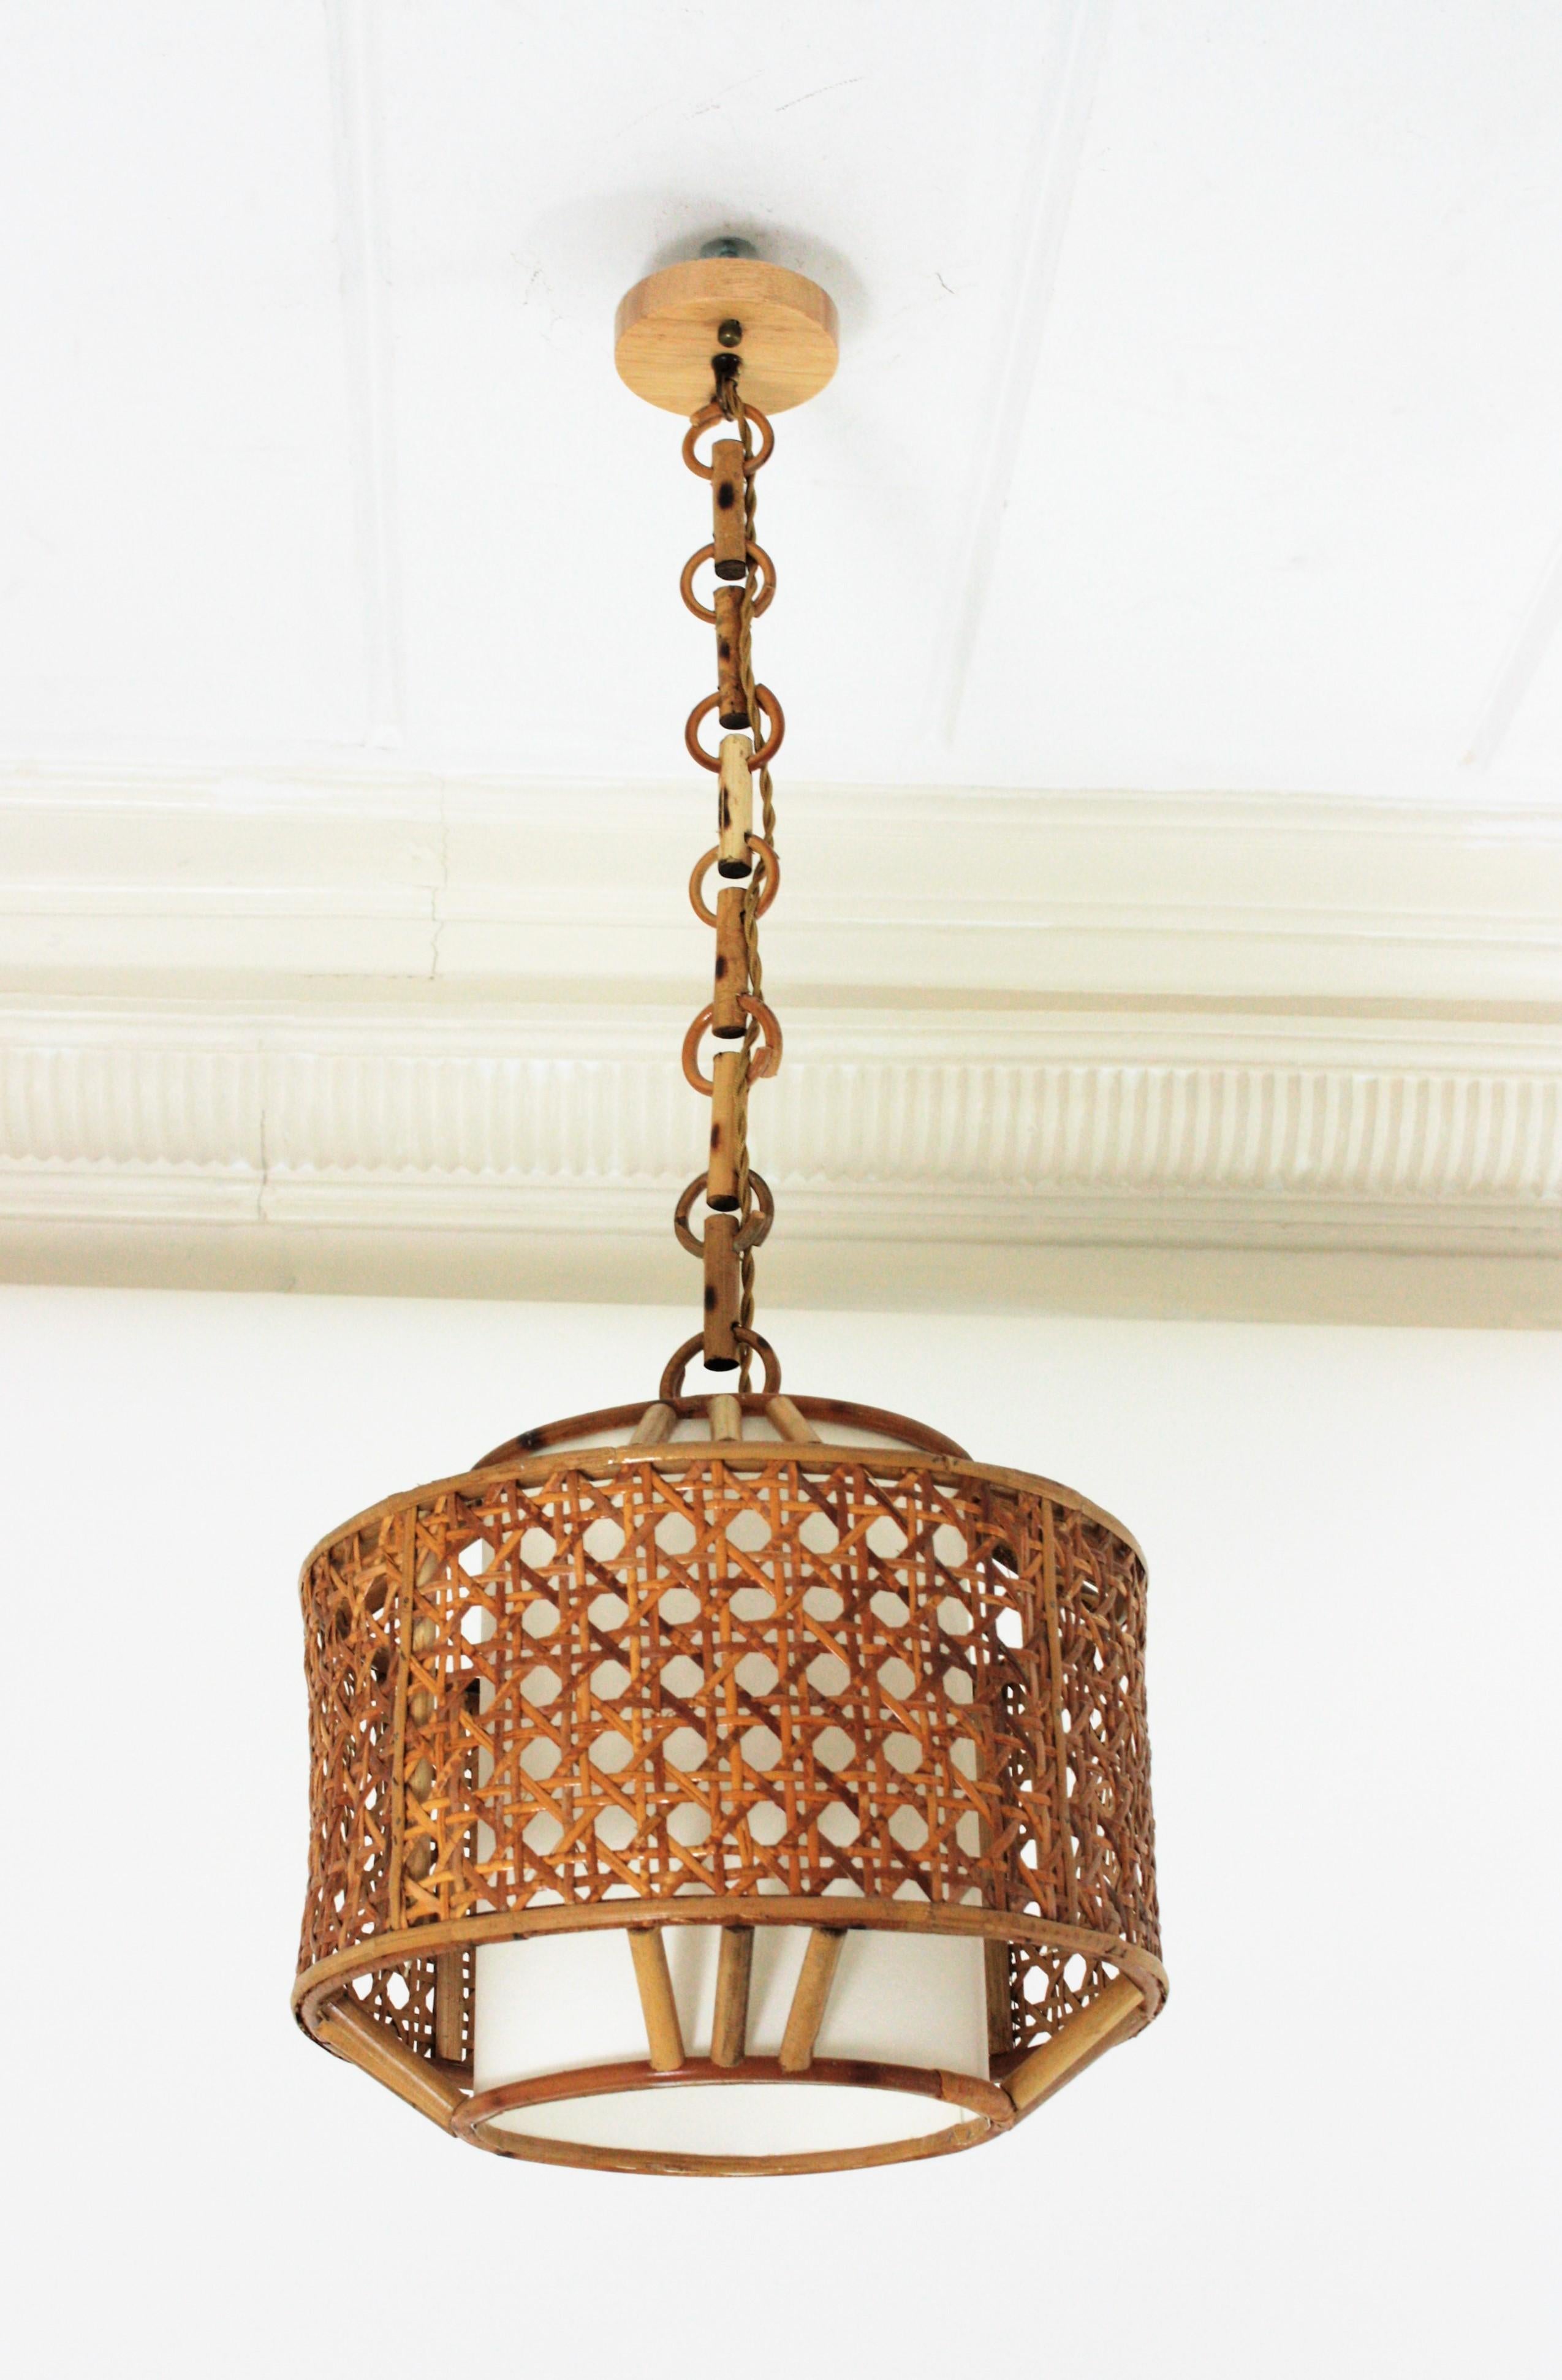 Lampe ou lanterne pendante espagnole des années 1960, de style moderne du milieu du siècle, en bambou et fil d'osier.
Cette lampe à suspension présente un abat-jour en forme de tambour en osier tressé avec des décorations en forme de triples bâtons